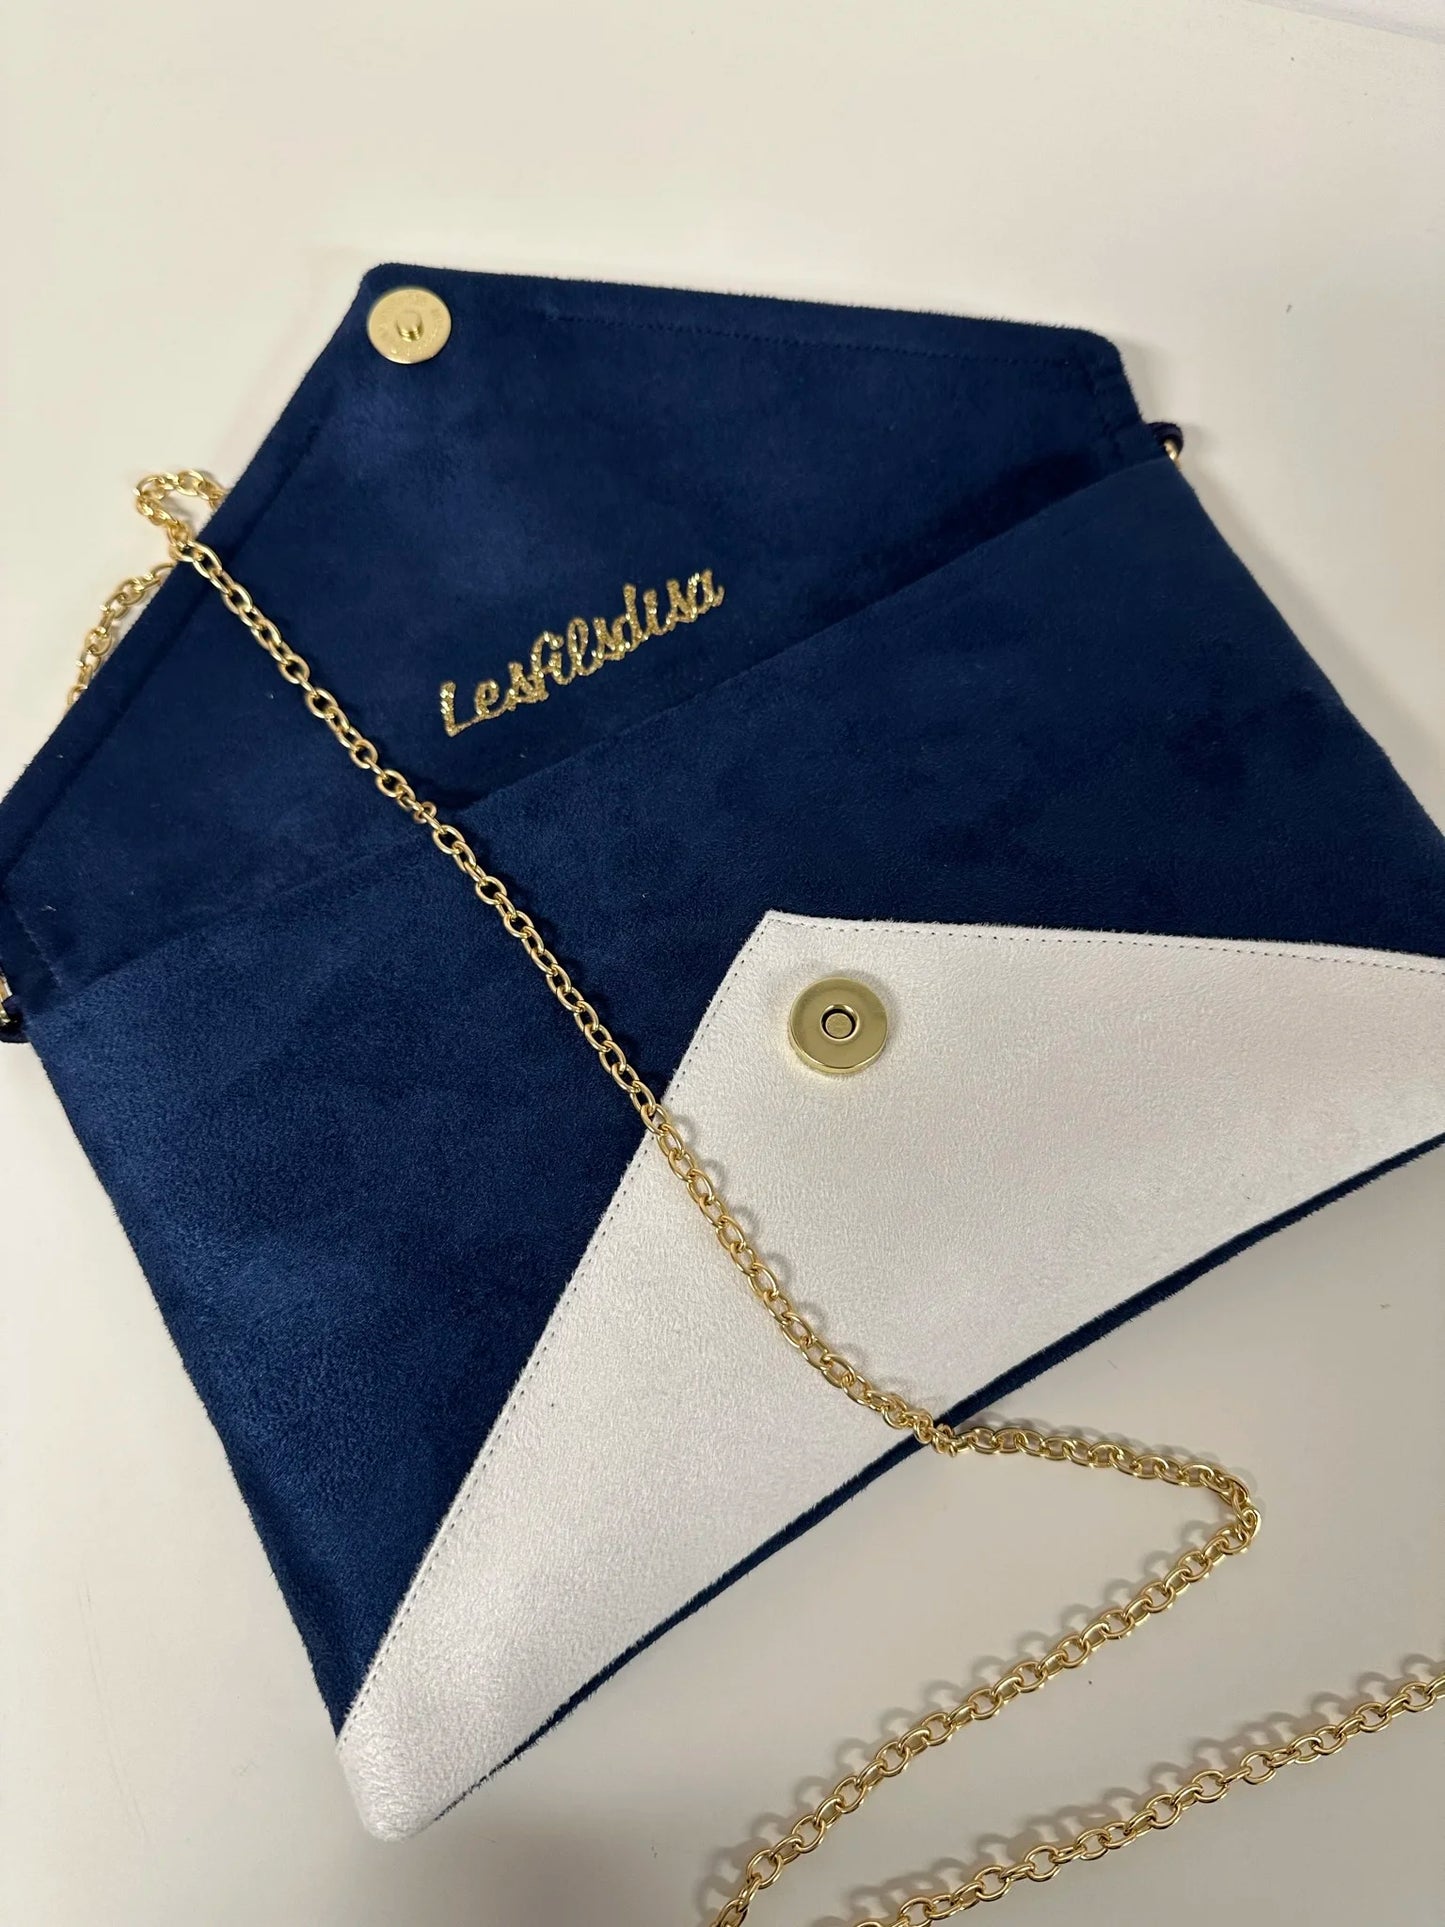 Le sac pochette Isa bleu marine et blanc à paillettes dorées, ouvert.